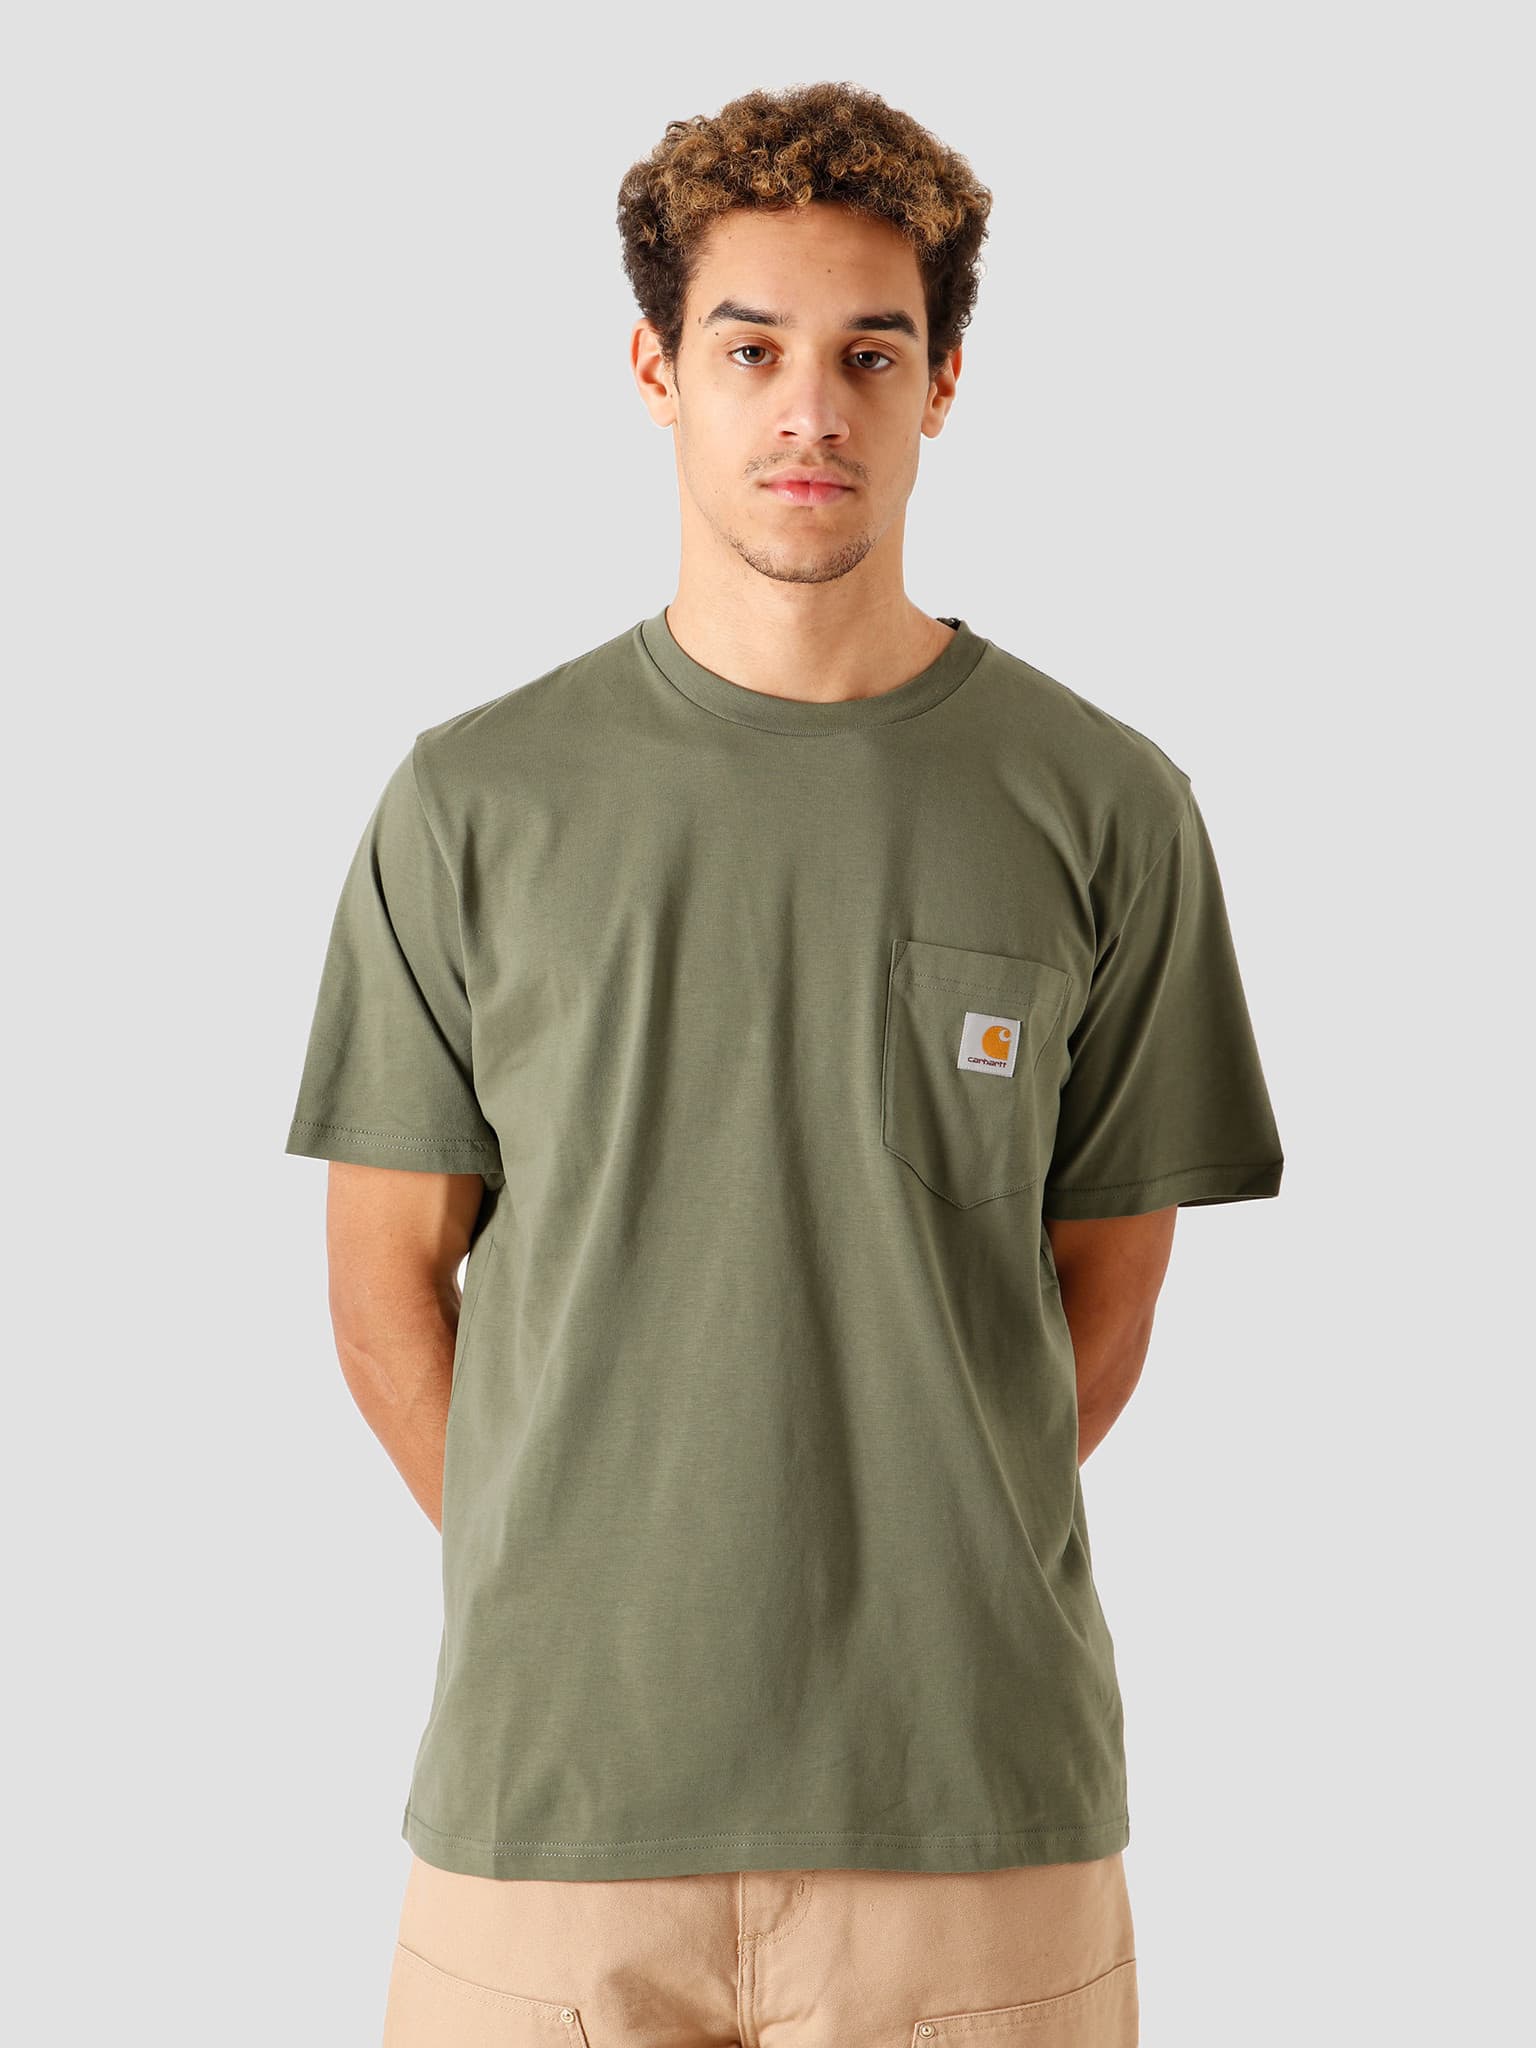 Pocket T-Shirt Dollar Green I022091-66700